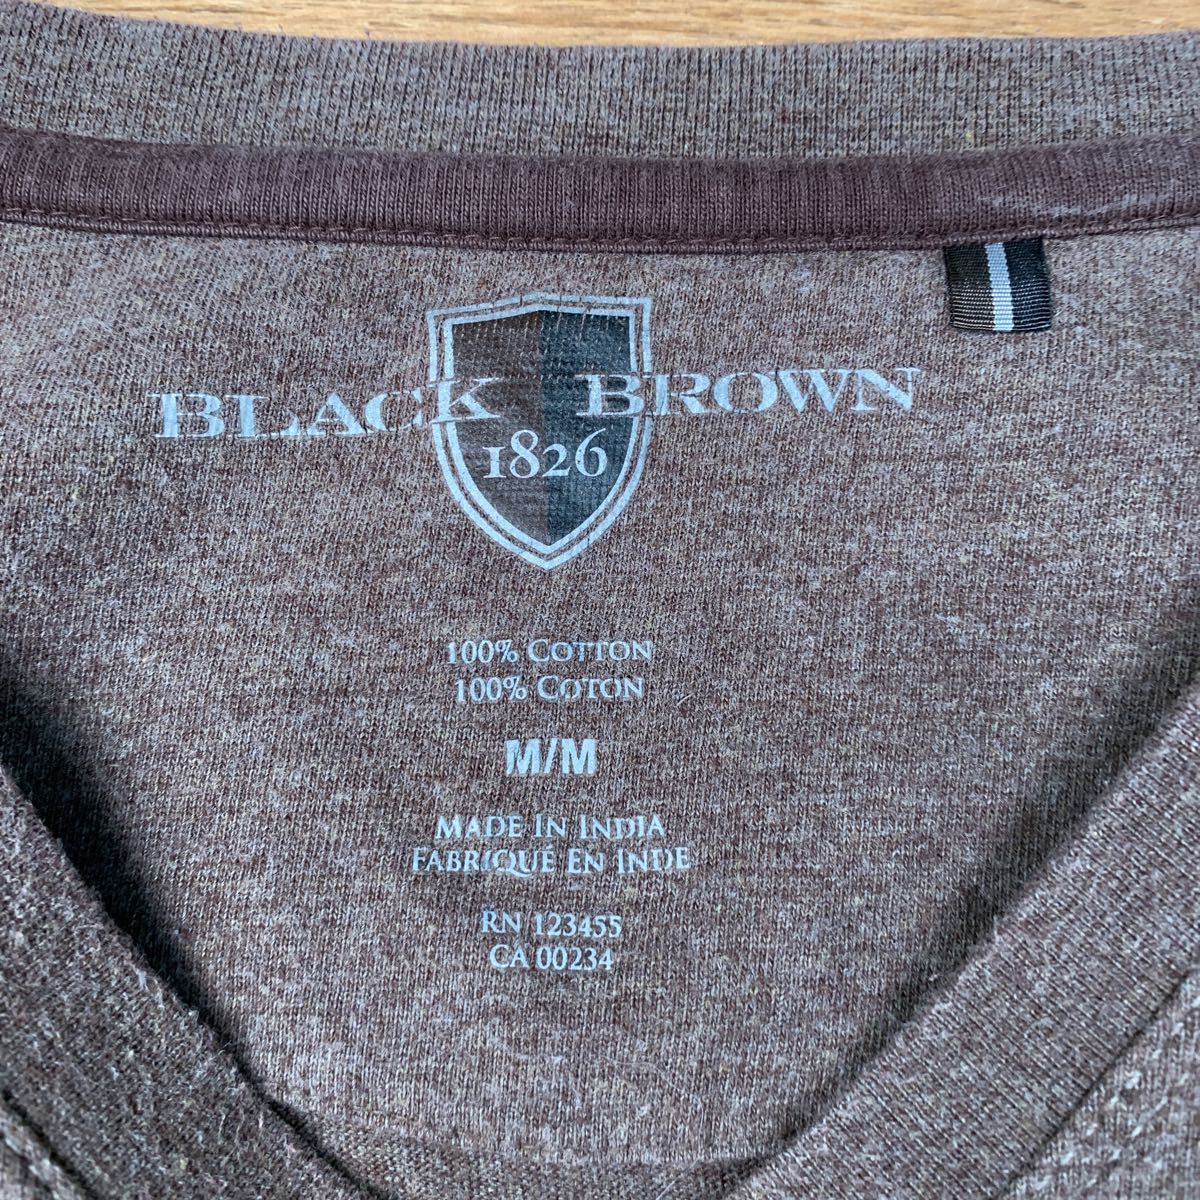 BLACK BROWN 長袖 Tシャツ M ブラウン 無地 シンプル Vネック ロンT 古着卸 アメリカ仕入れ a407-5480_画像7